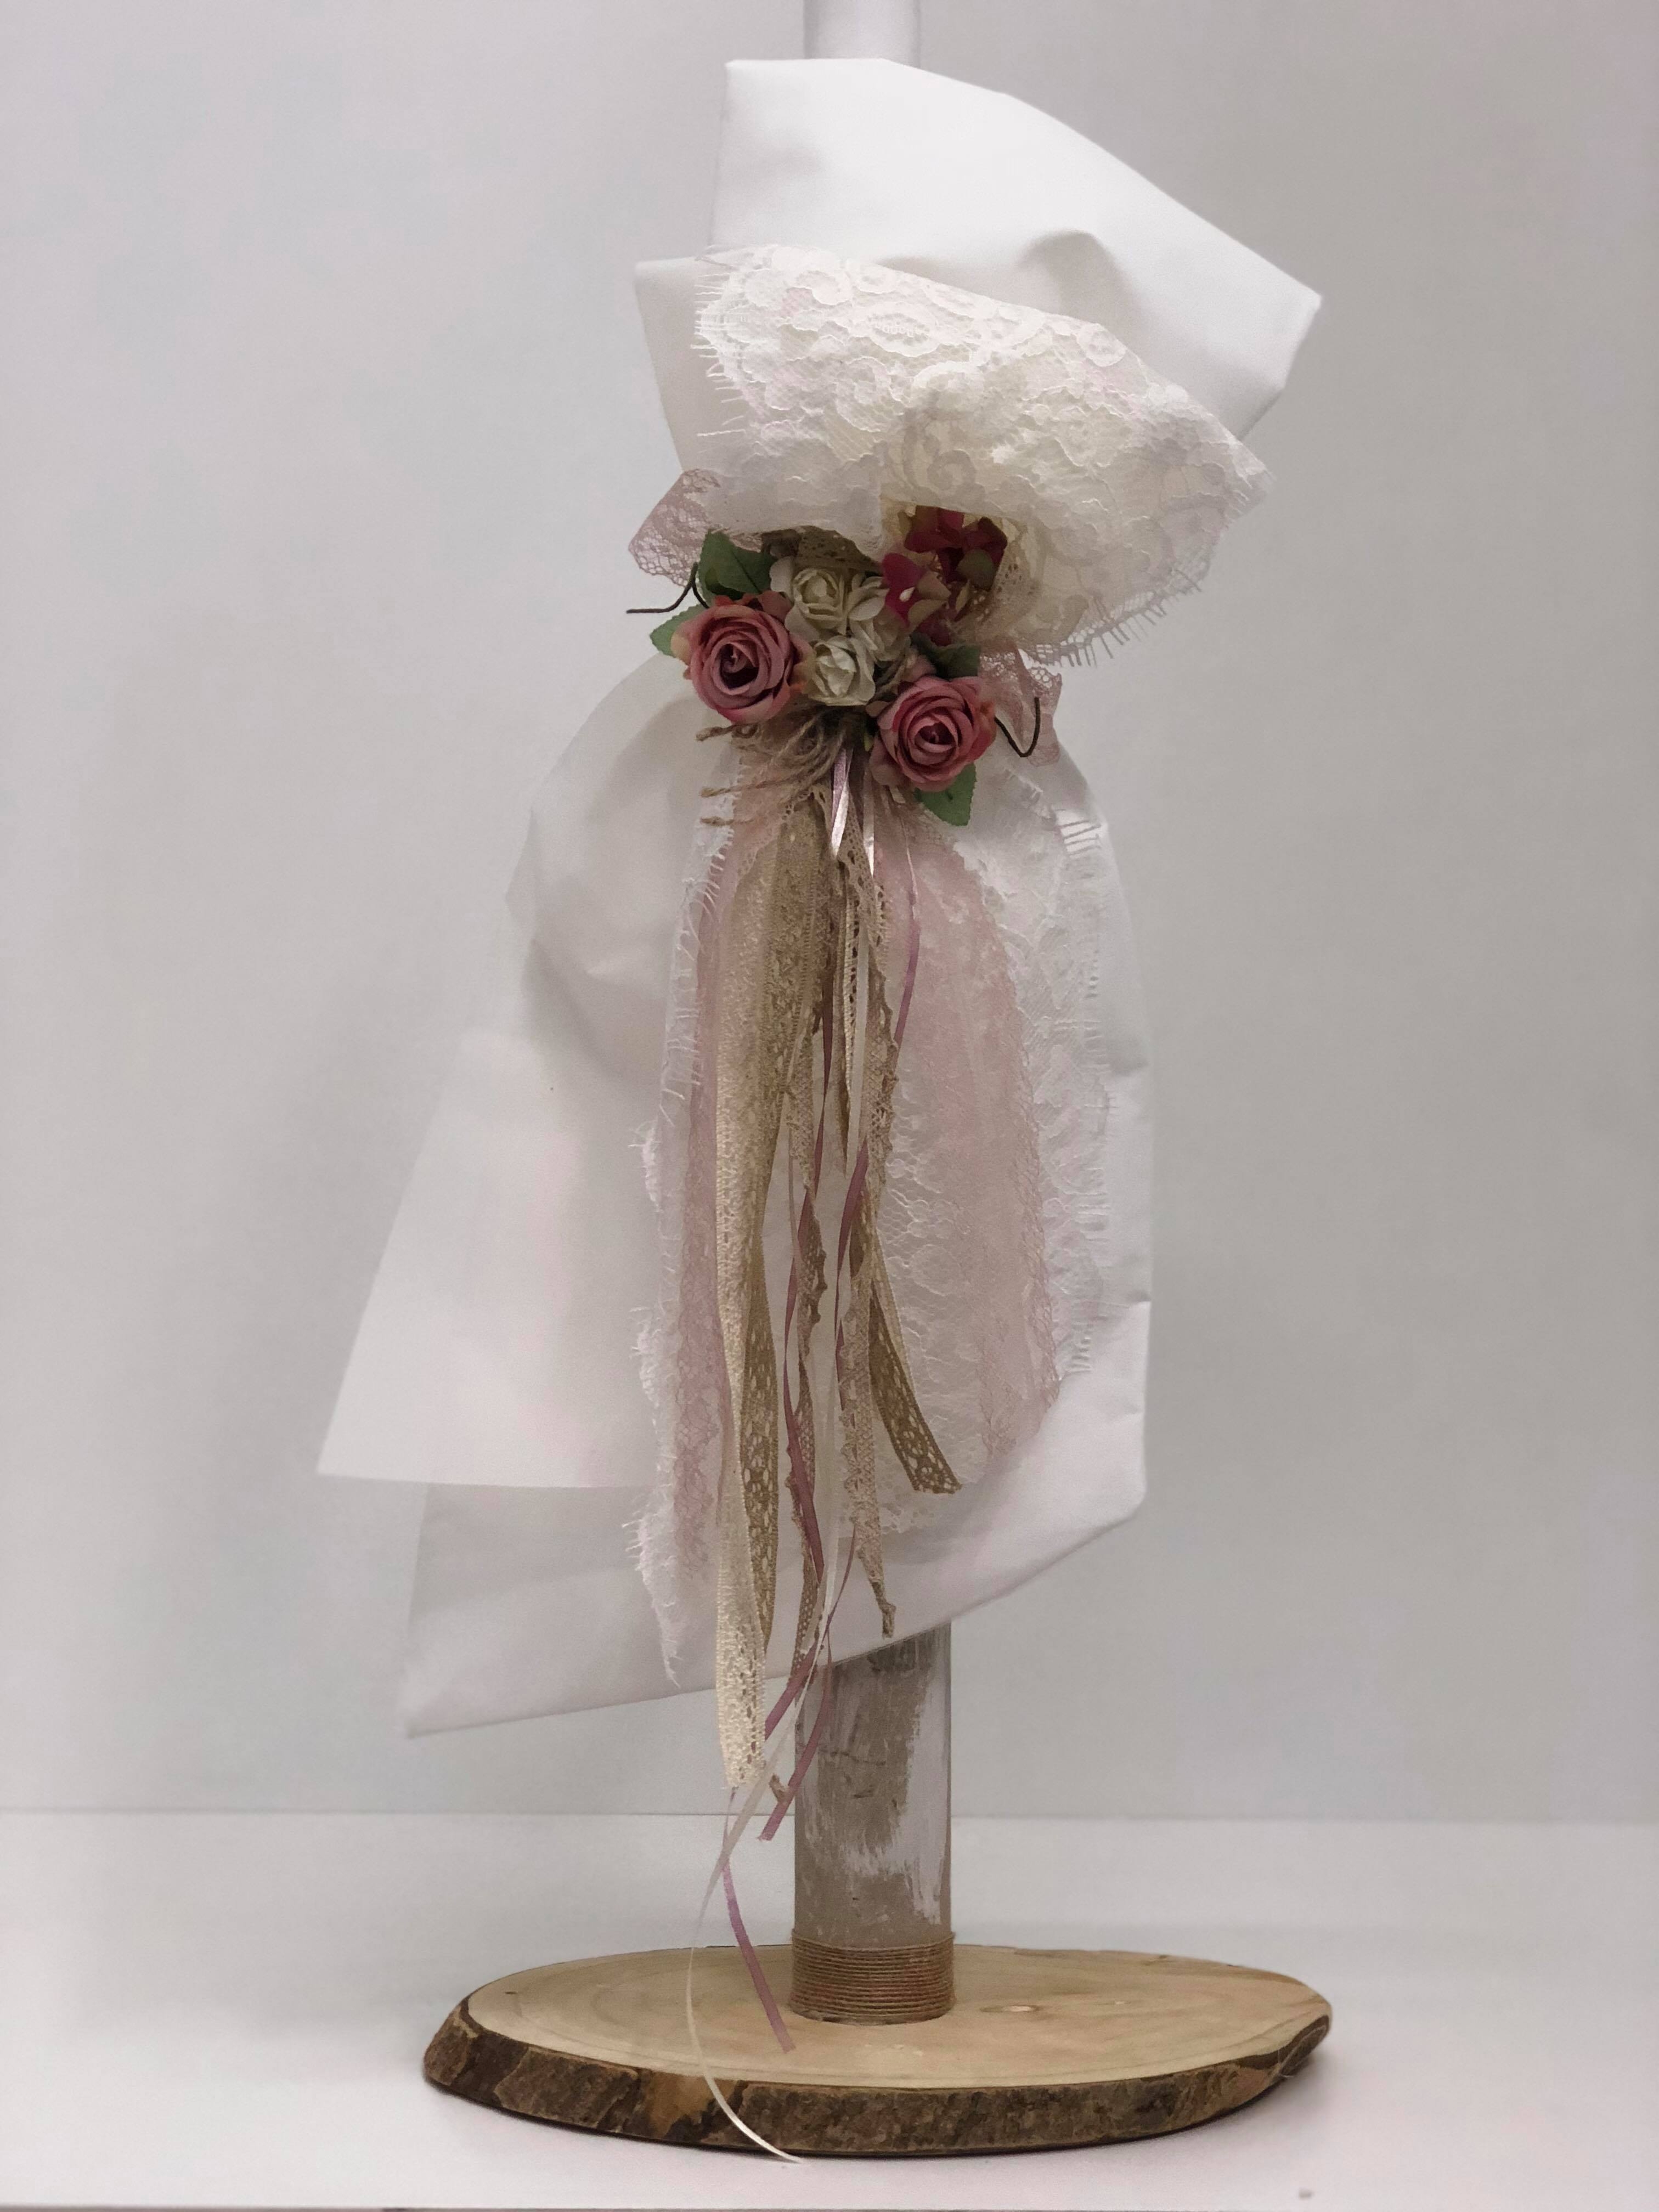 βαπτιστική λαμπάδα κορίτσι άνθη λουλούδια δαντέλα κορδέλες ύφασμα ιβουάρ ροζ μπεζ ιβουάρ κερί οικονομική Θεσσαλονίκη Αθήνα : 1